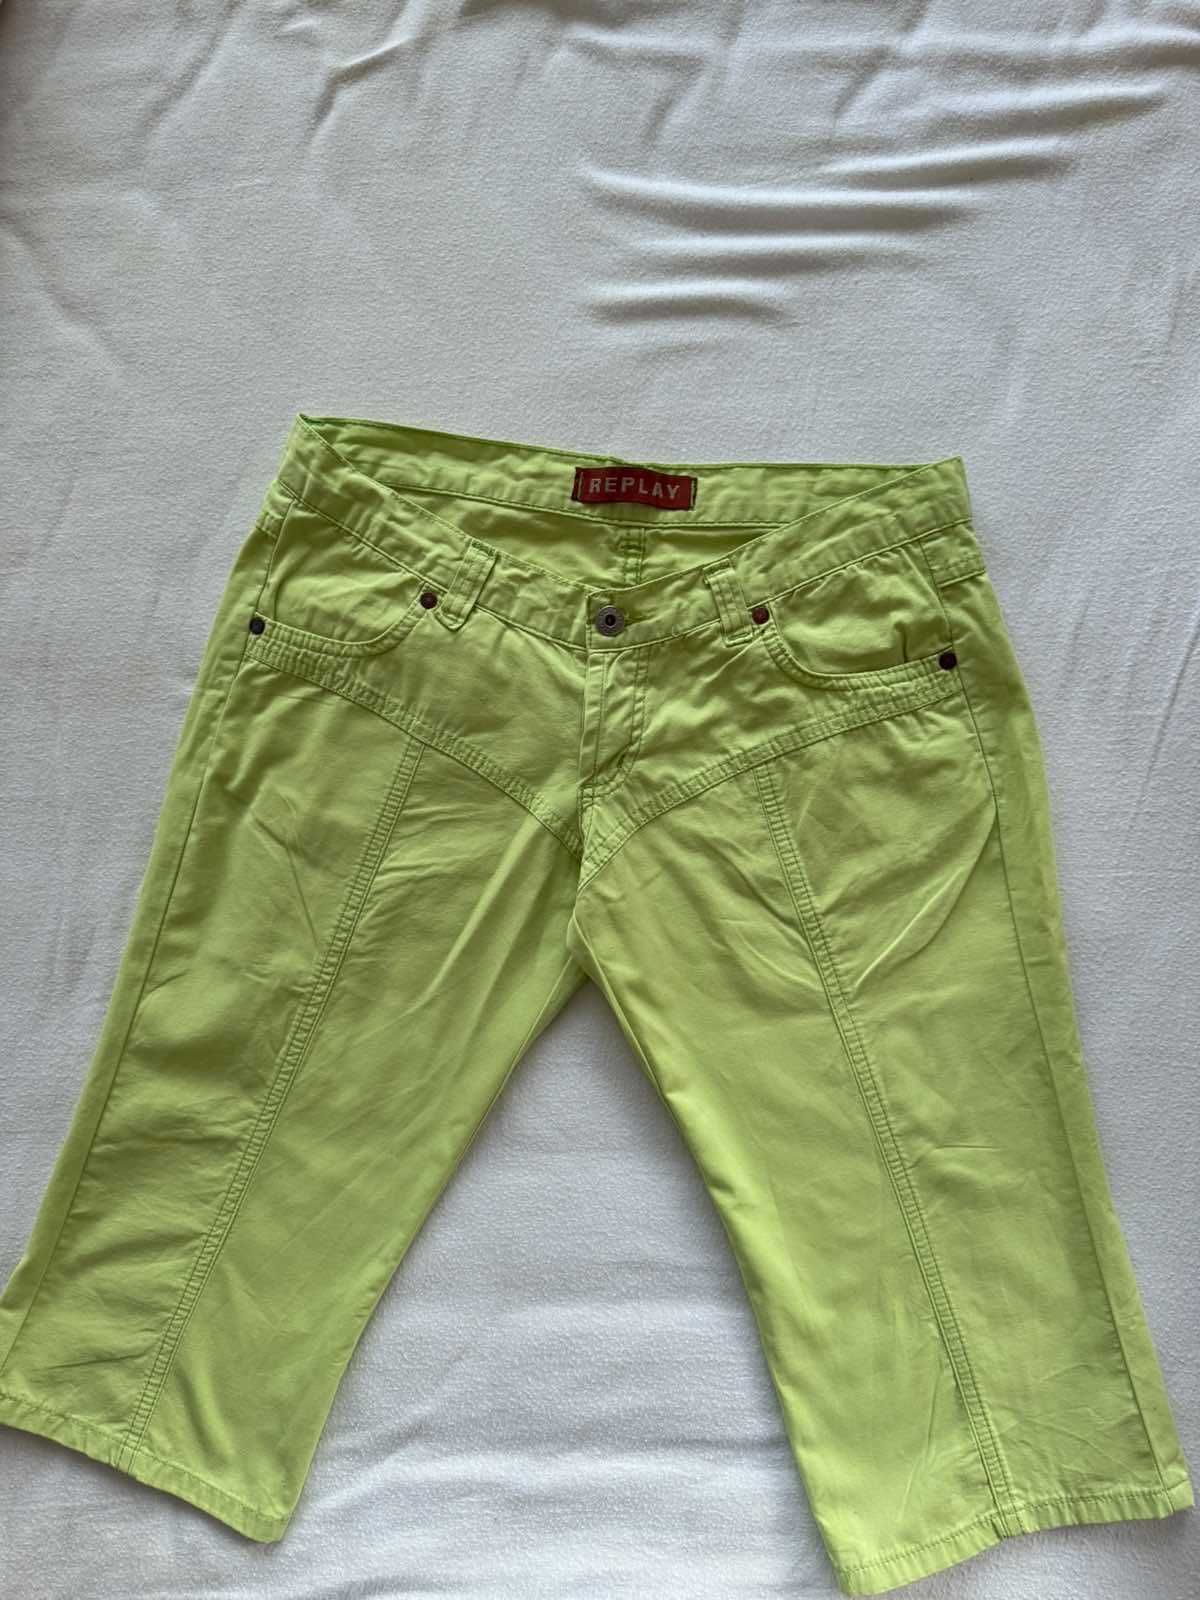 Два дамски летни 3/4 панталона: бял-DiKa, светлозелен-Replay, размер S